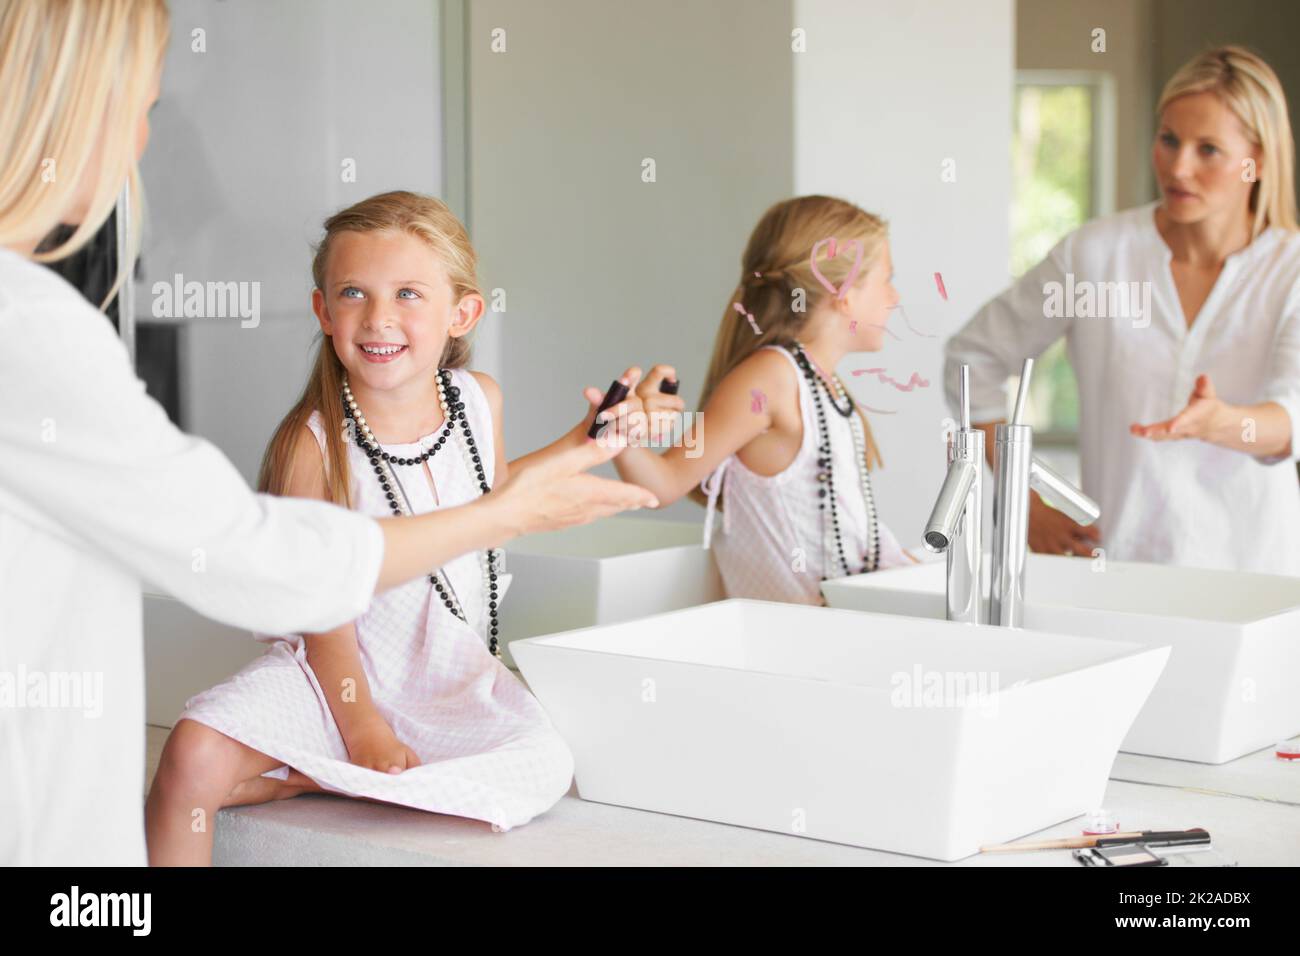 Warum habt Ihr das getan? Kleines Mädchen im Badezimmer in Schwierigkeiten für das Zeichnen auf den Spiegel. Stockfoto